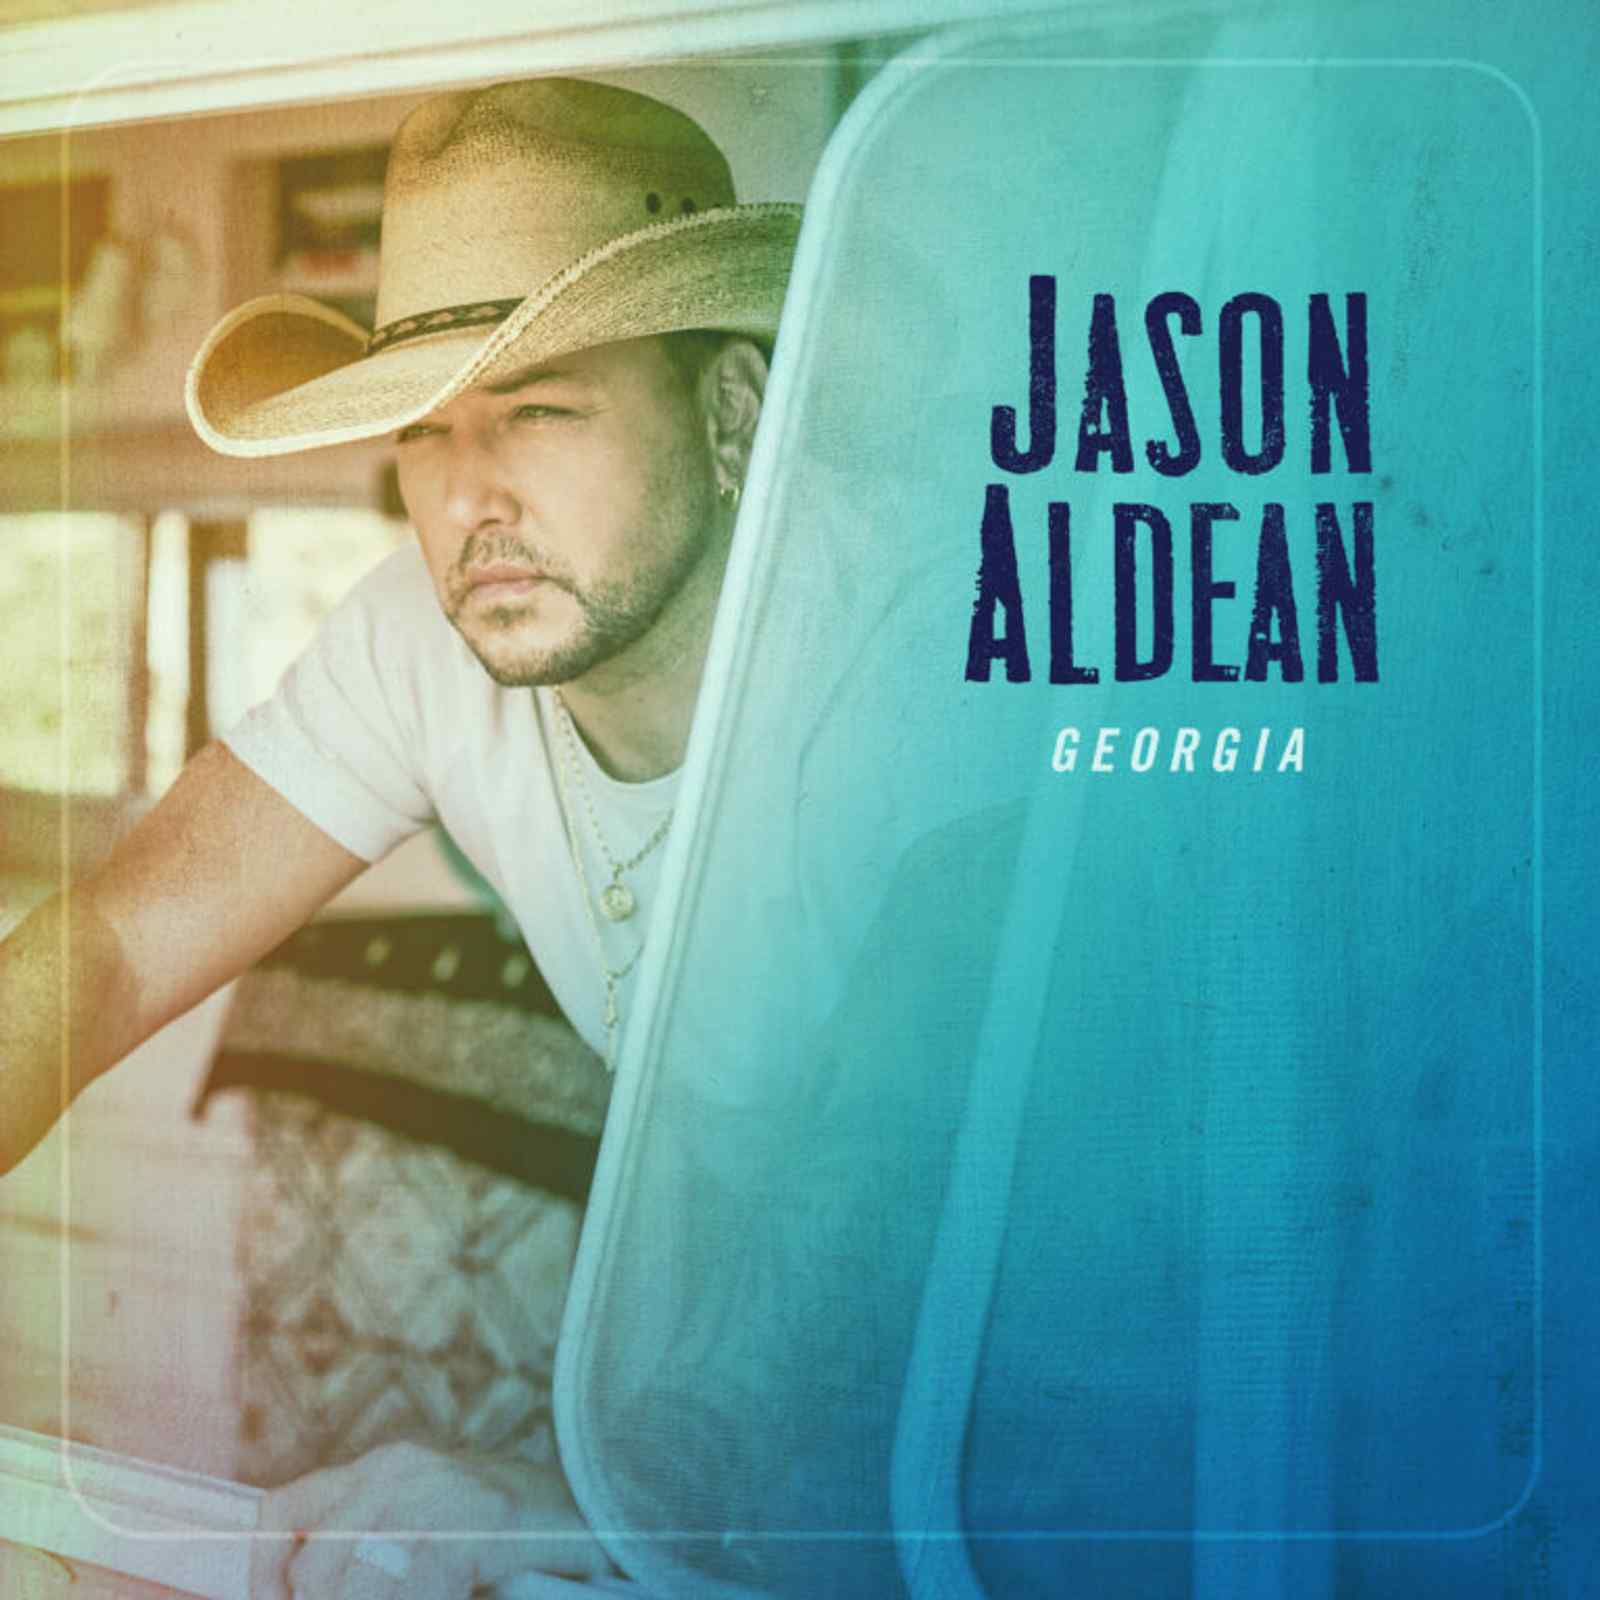 Macon, Georgia by Jason Aldean